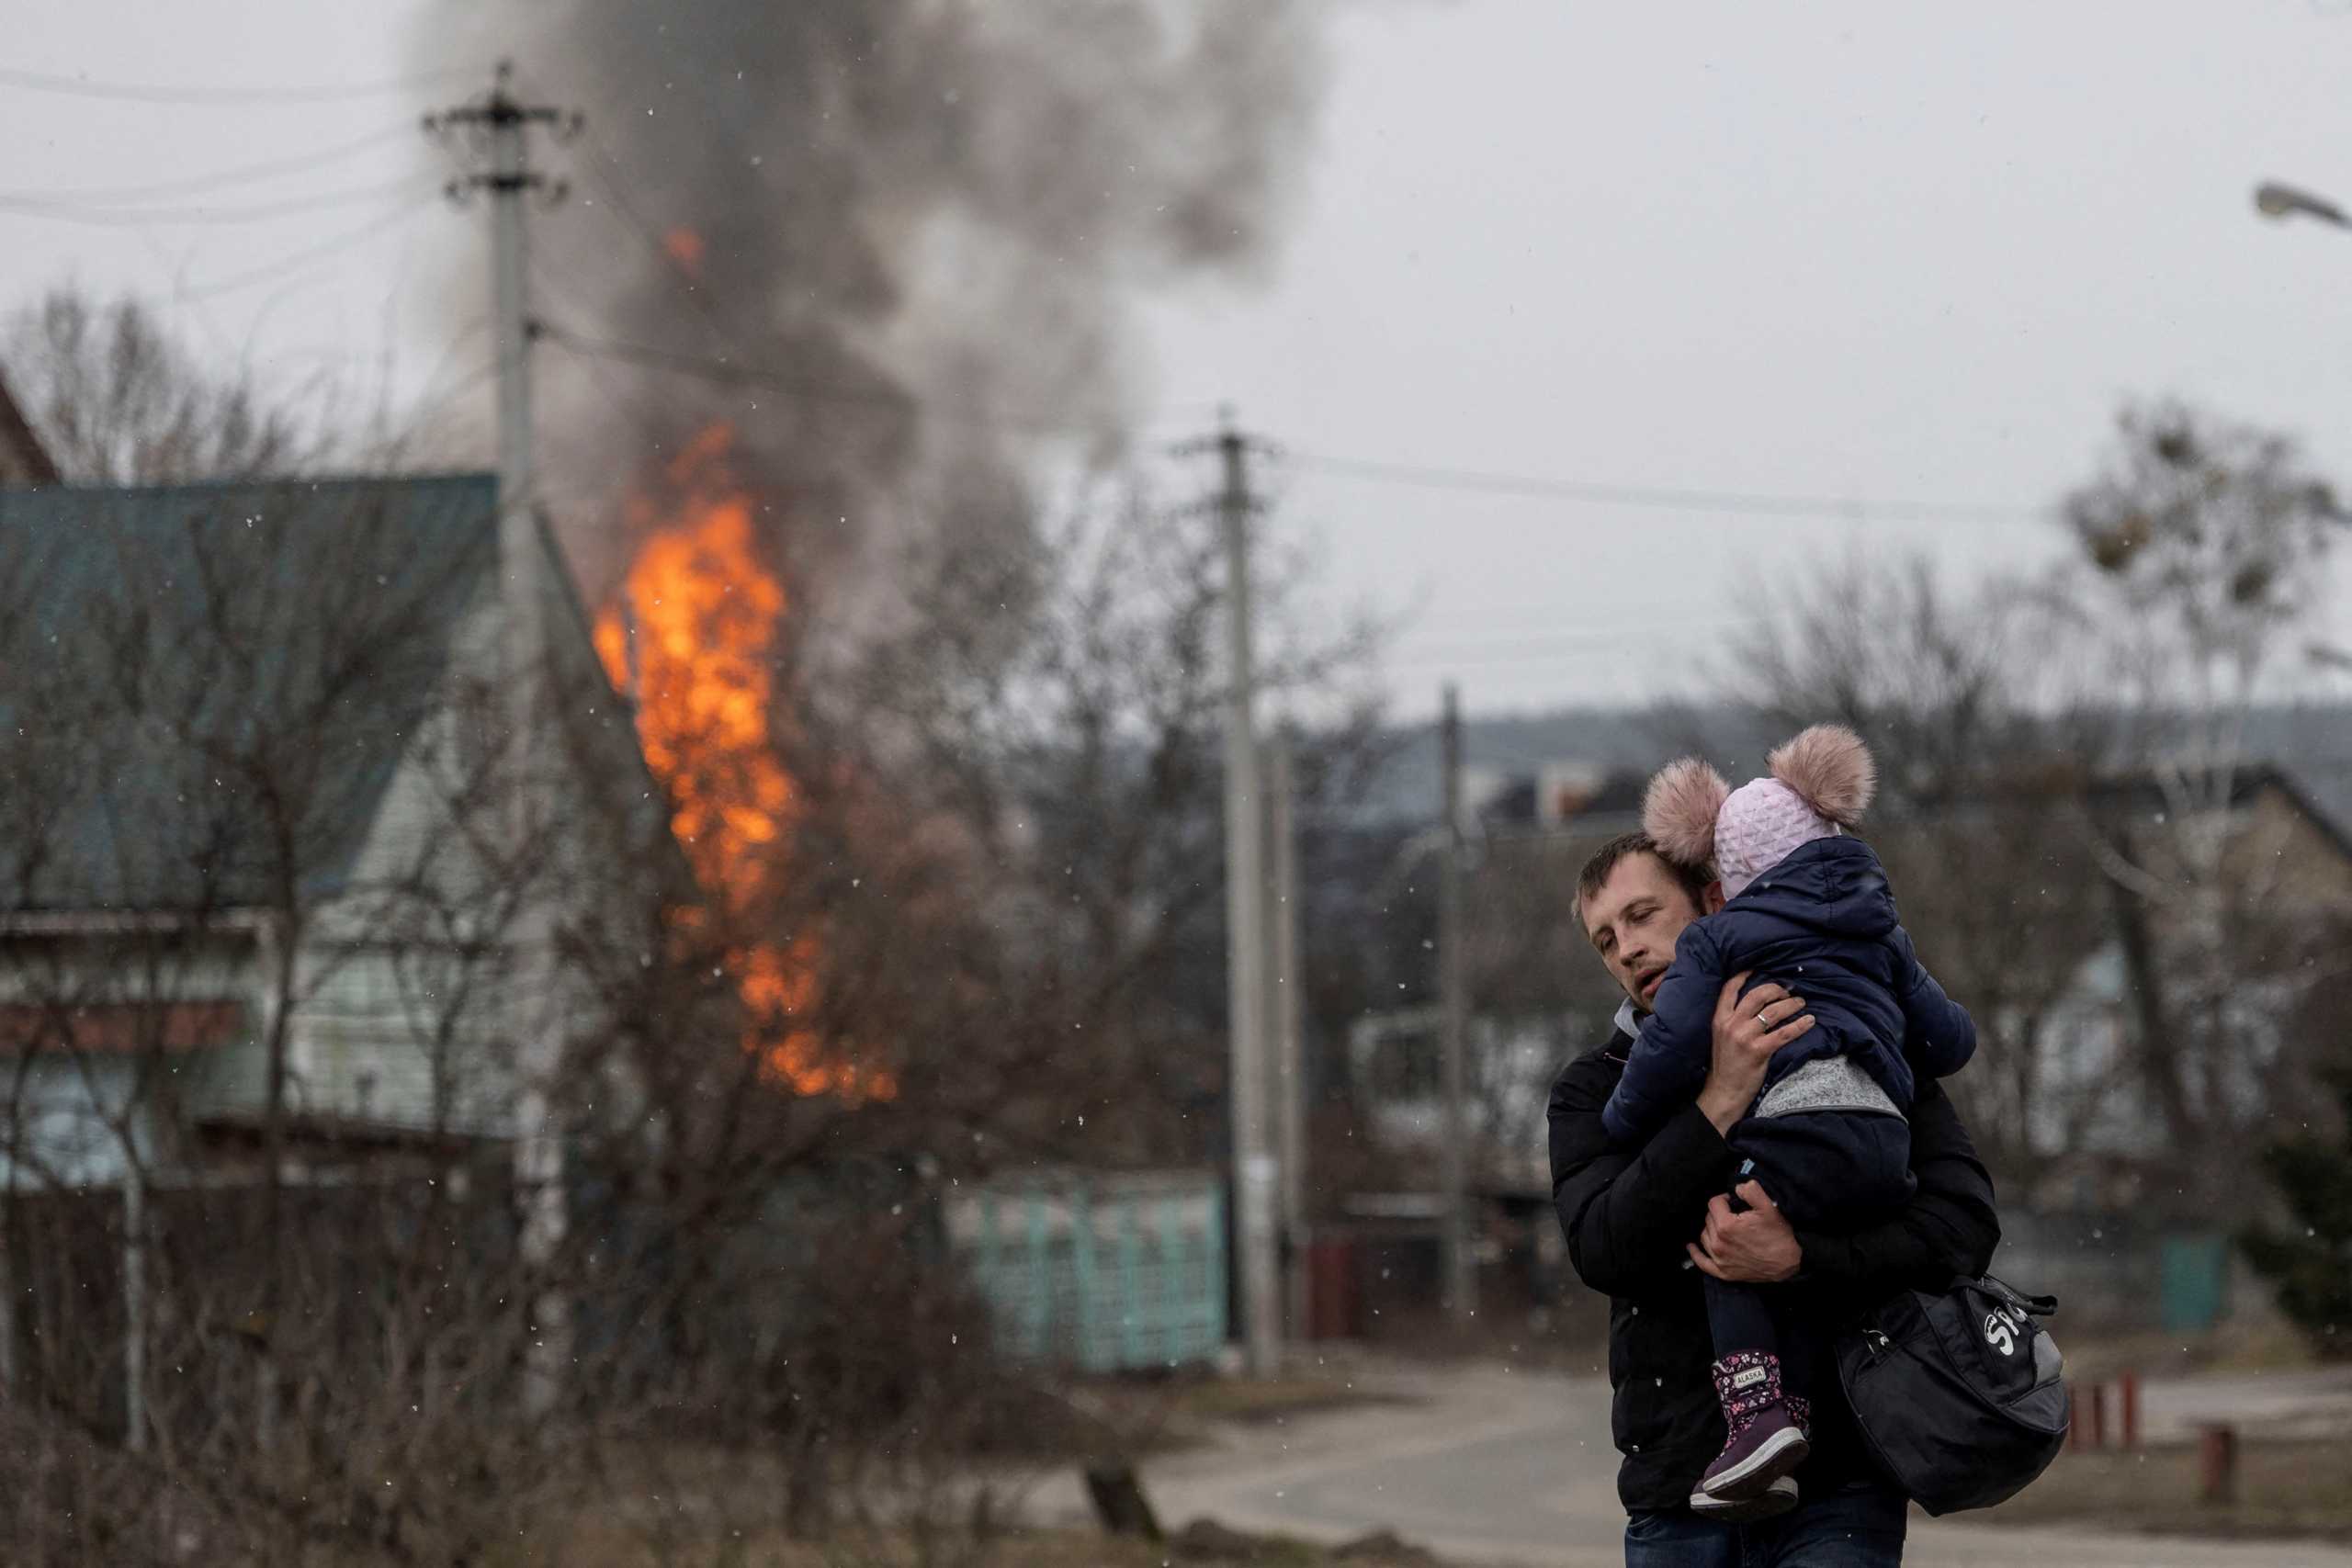 Πόλεμος στην Ουκρανία: Ασύλληπτες εικόνες αγριότητας στο Ιρπίν – Νεκροί άμαχοι και σκληρές εικόνες